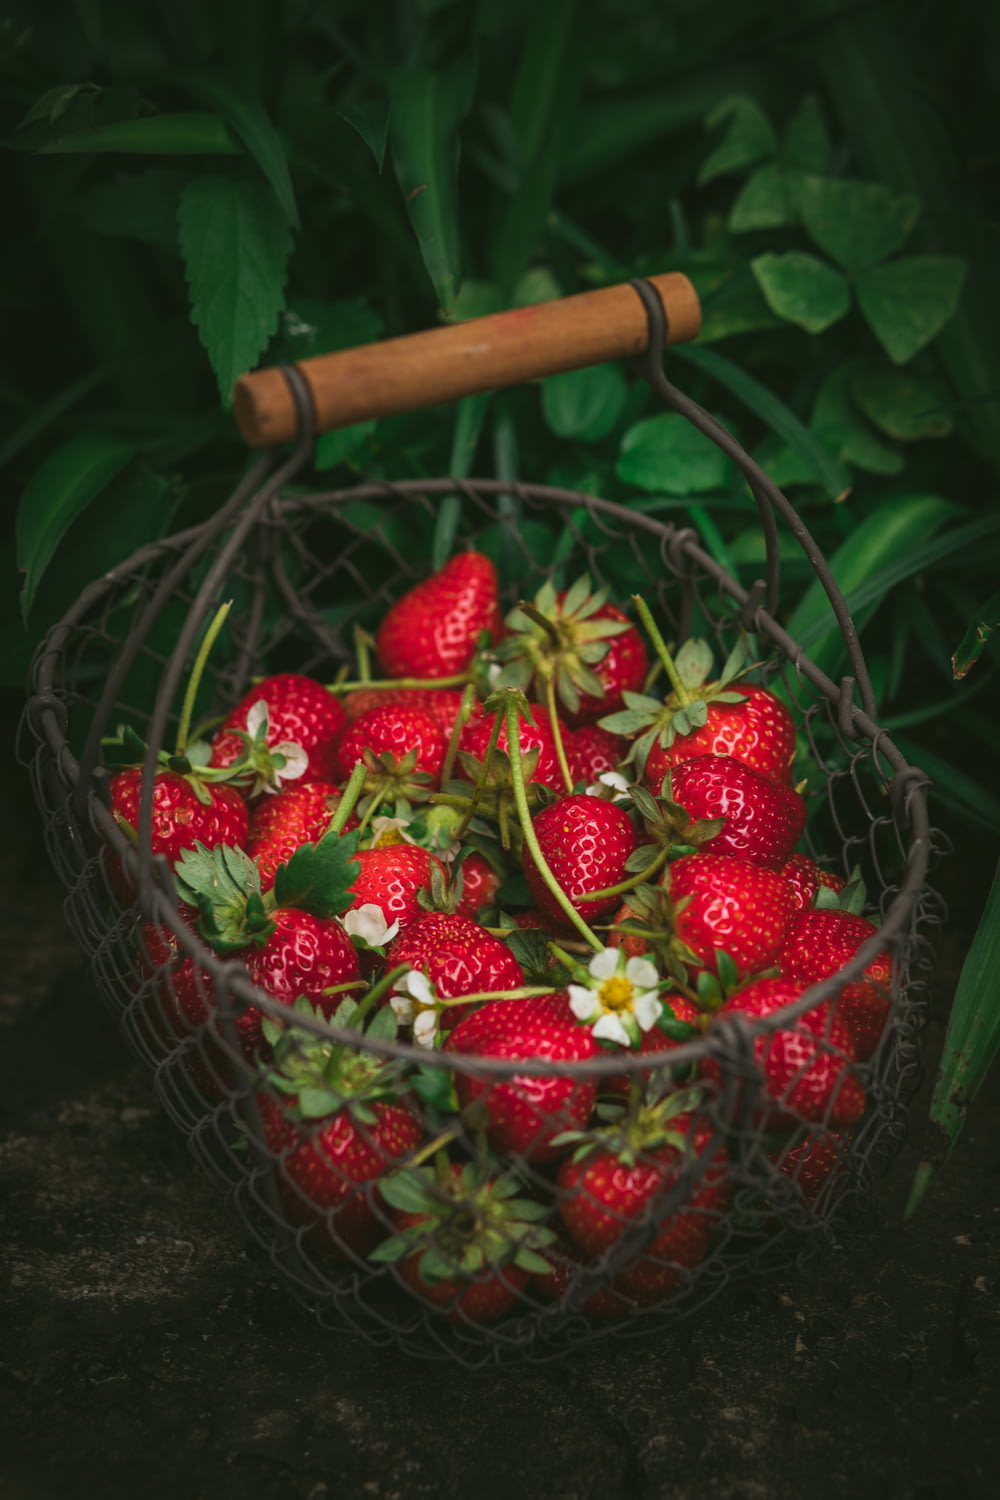 strawberries in metal basket